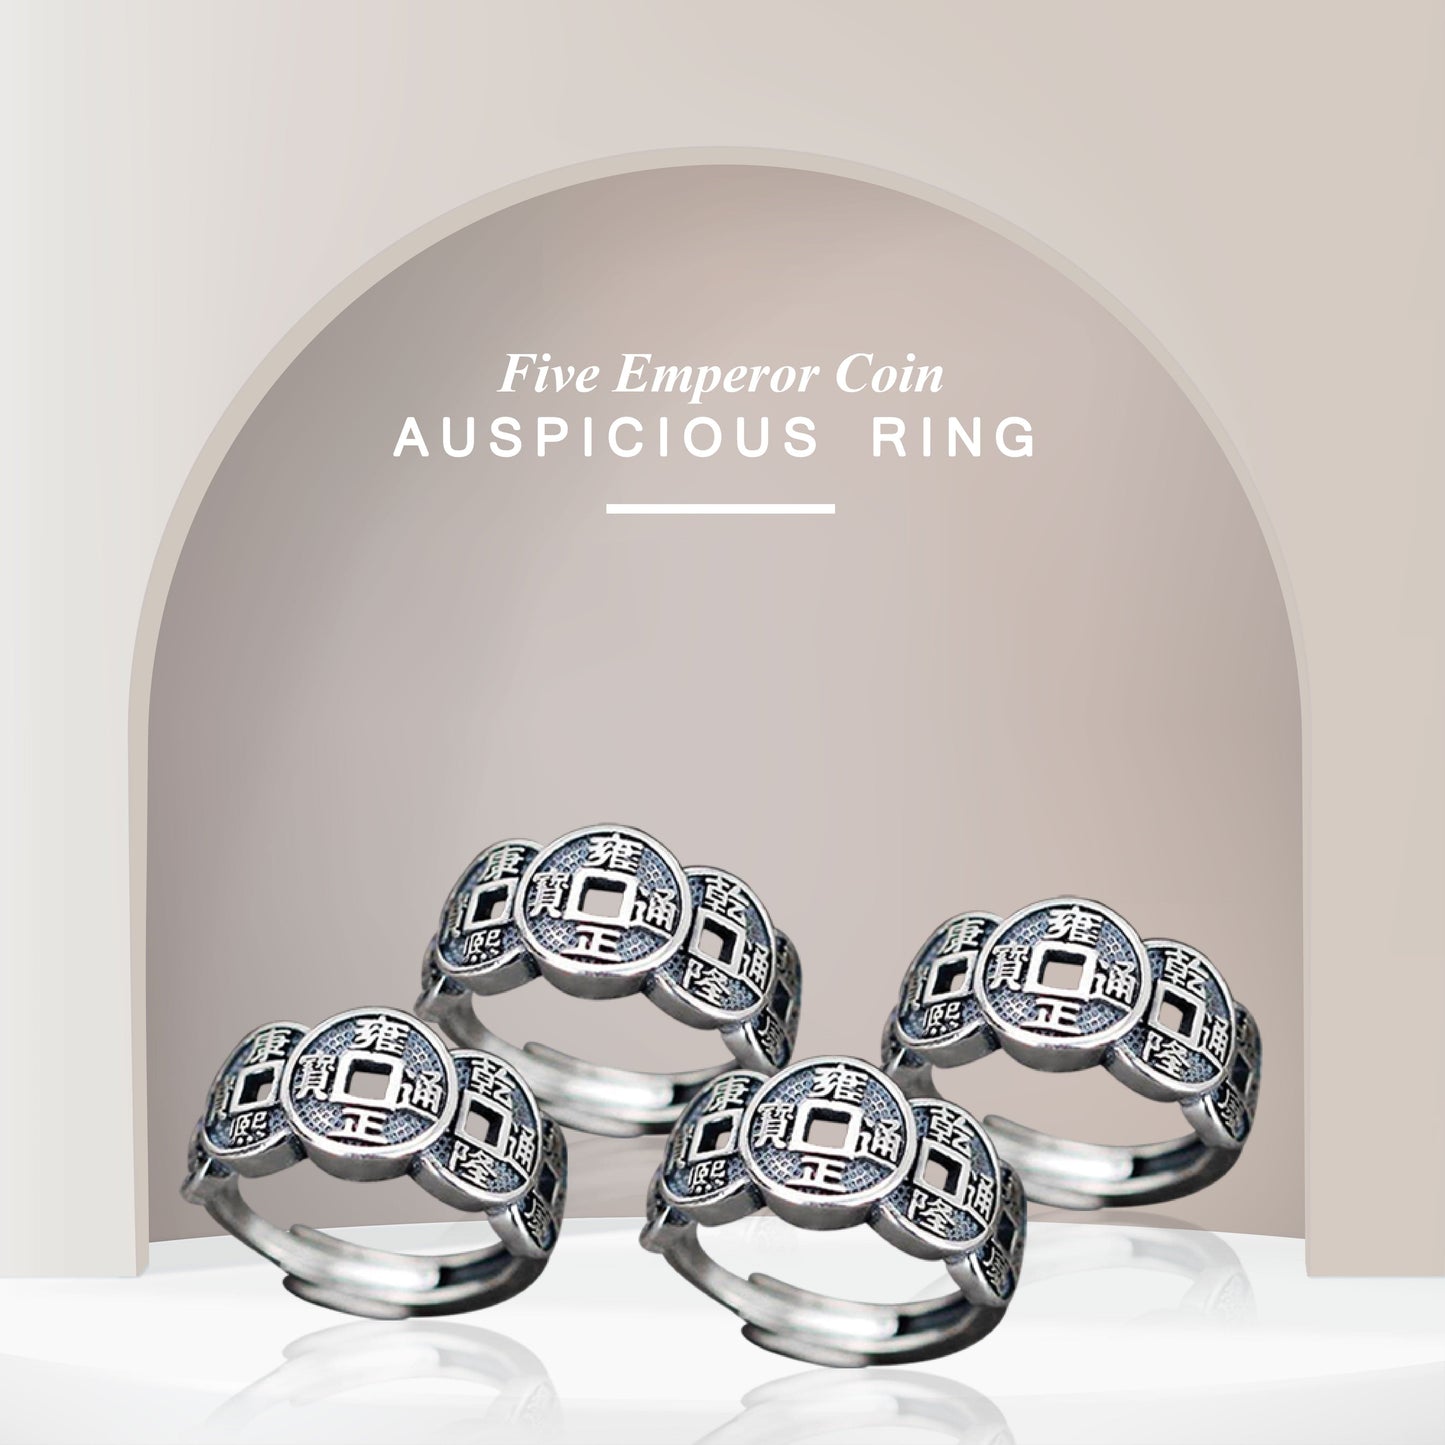 Five Emperor Coin Auspicious Ring